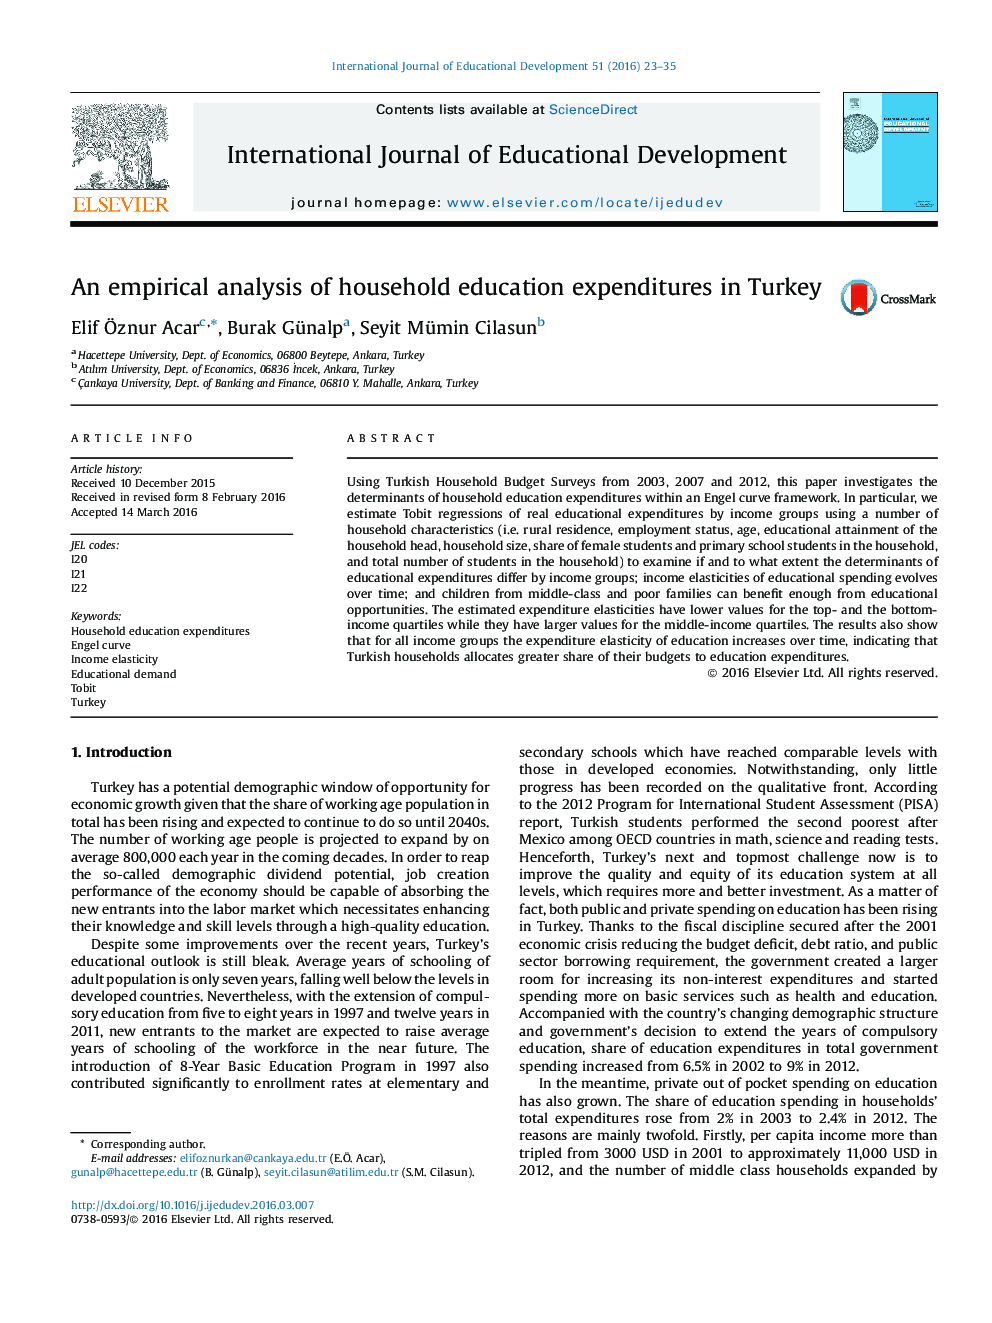 تجزیه و تحلیل تجربی از هزینه های آموزش و پرورش خانگی در ترکیه